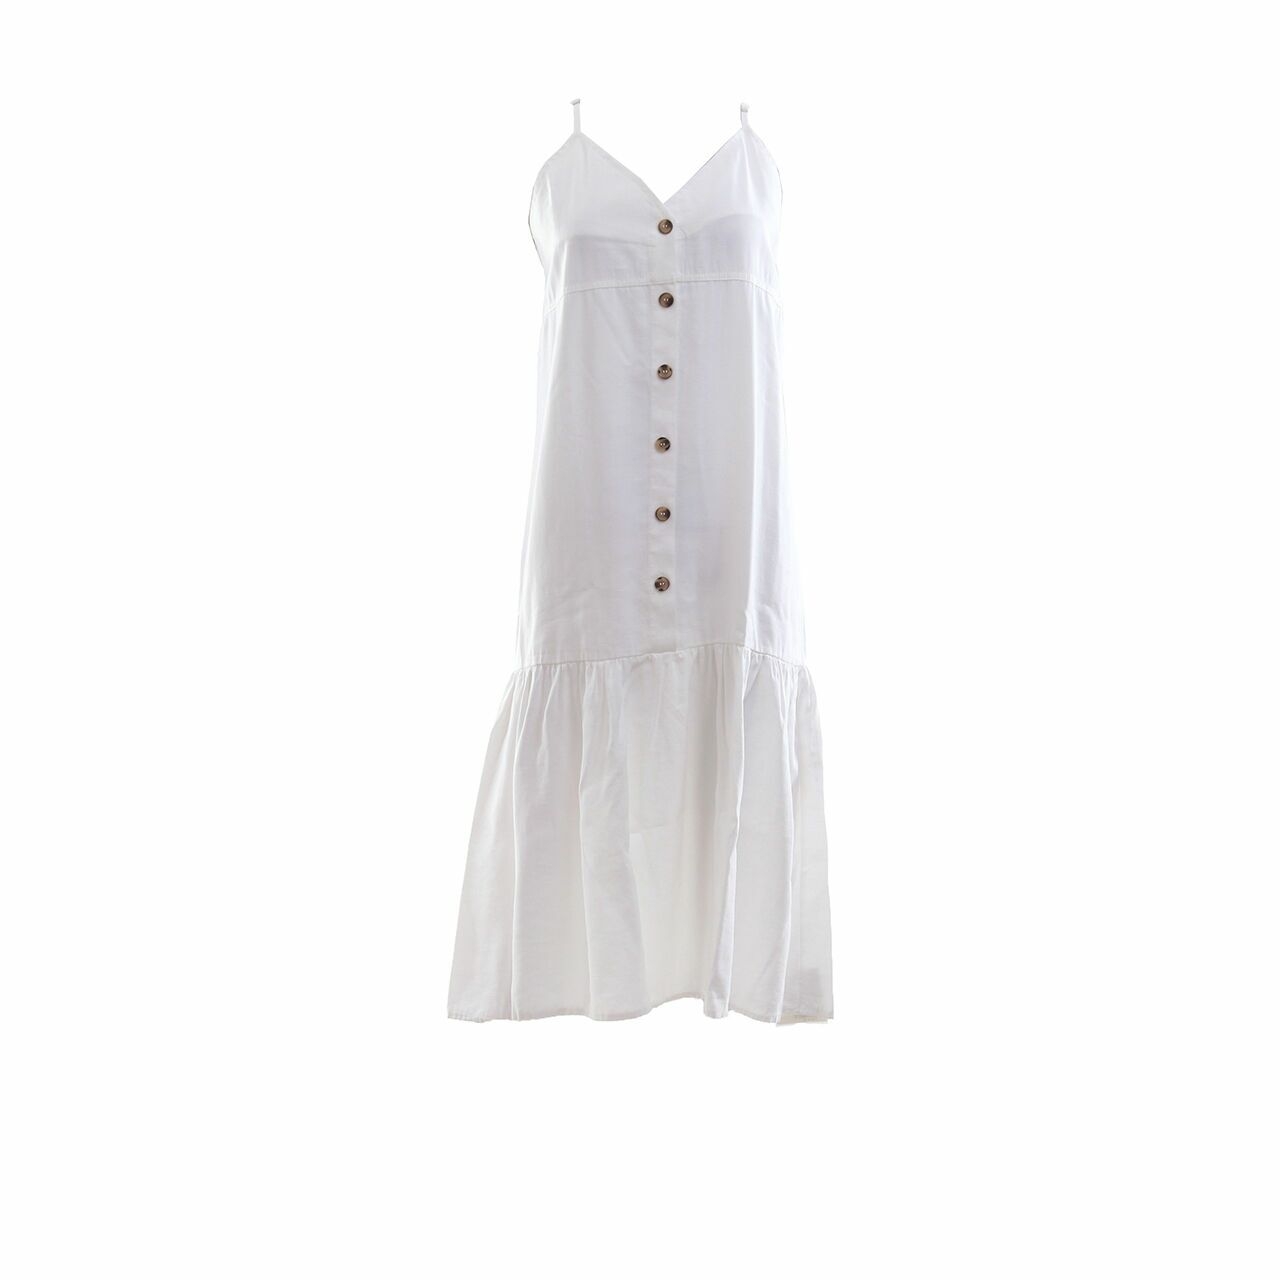 This is April White Midi Dress